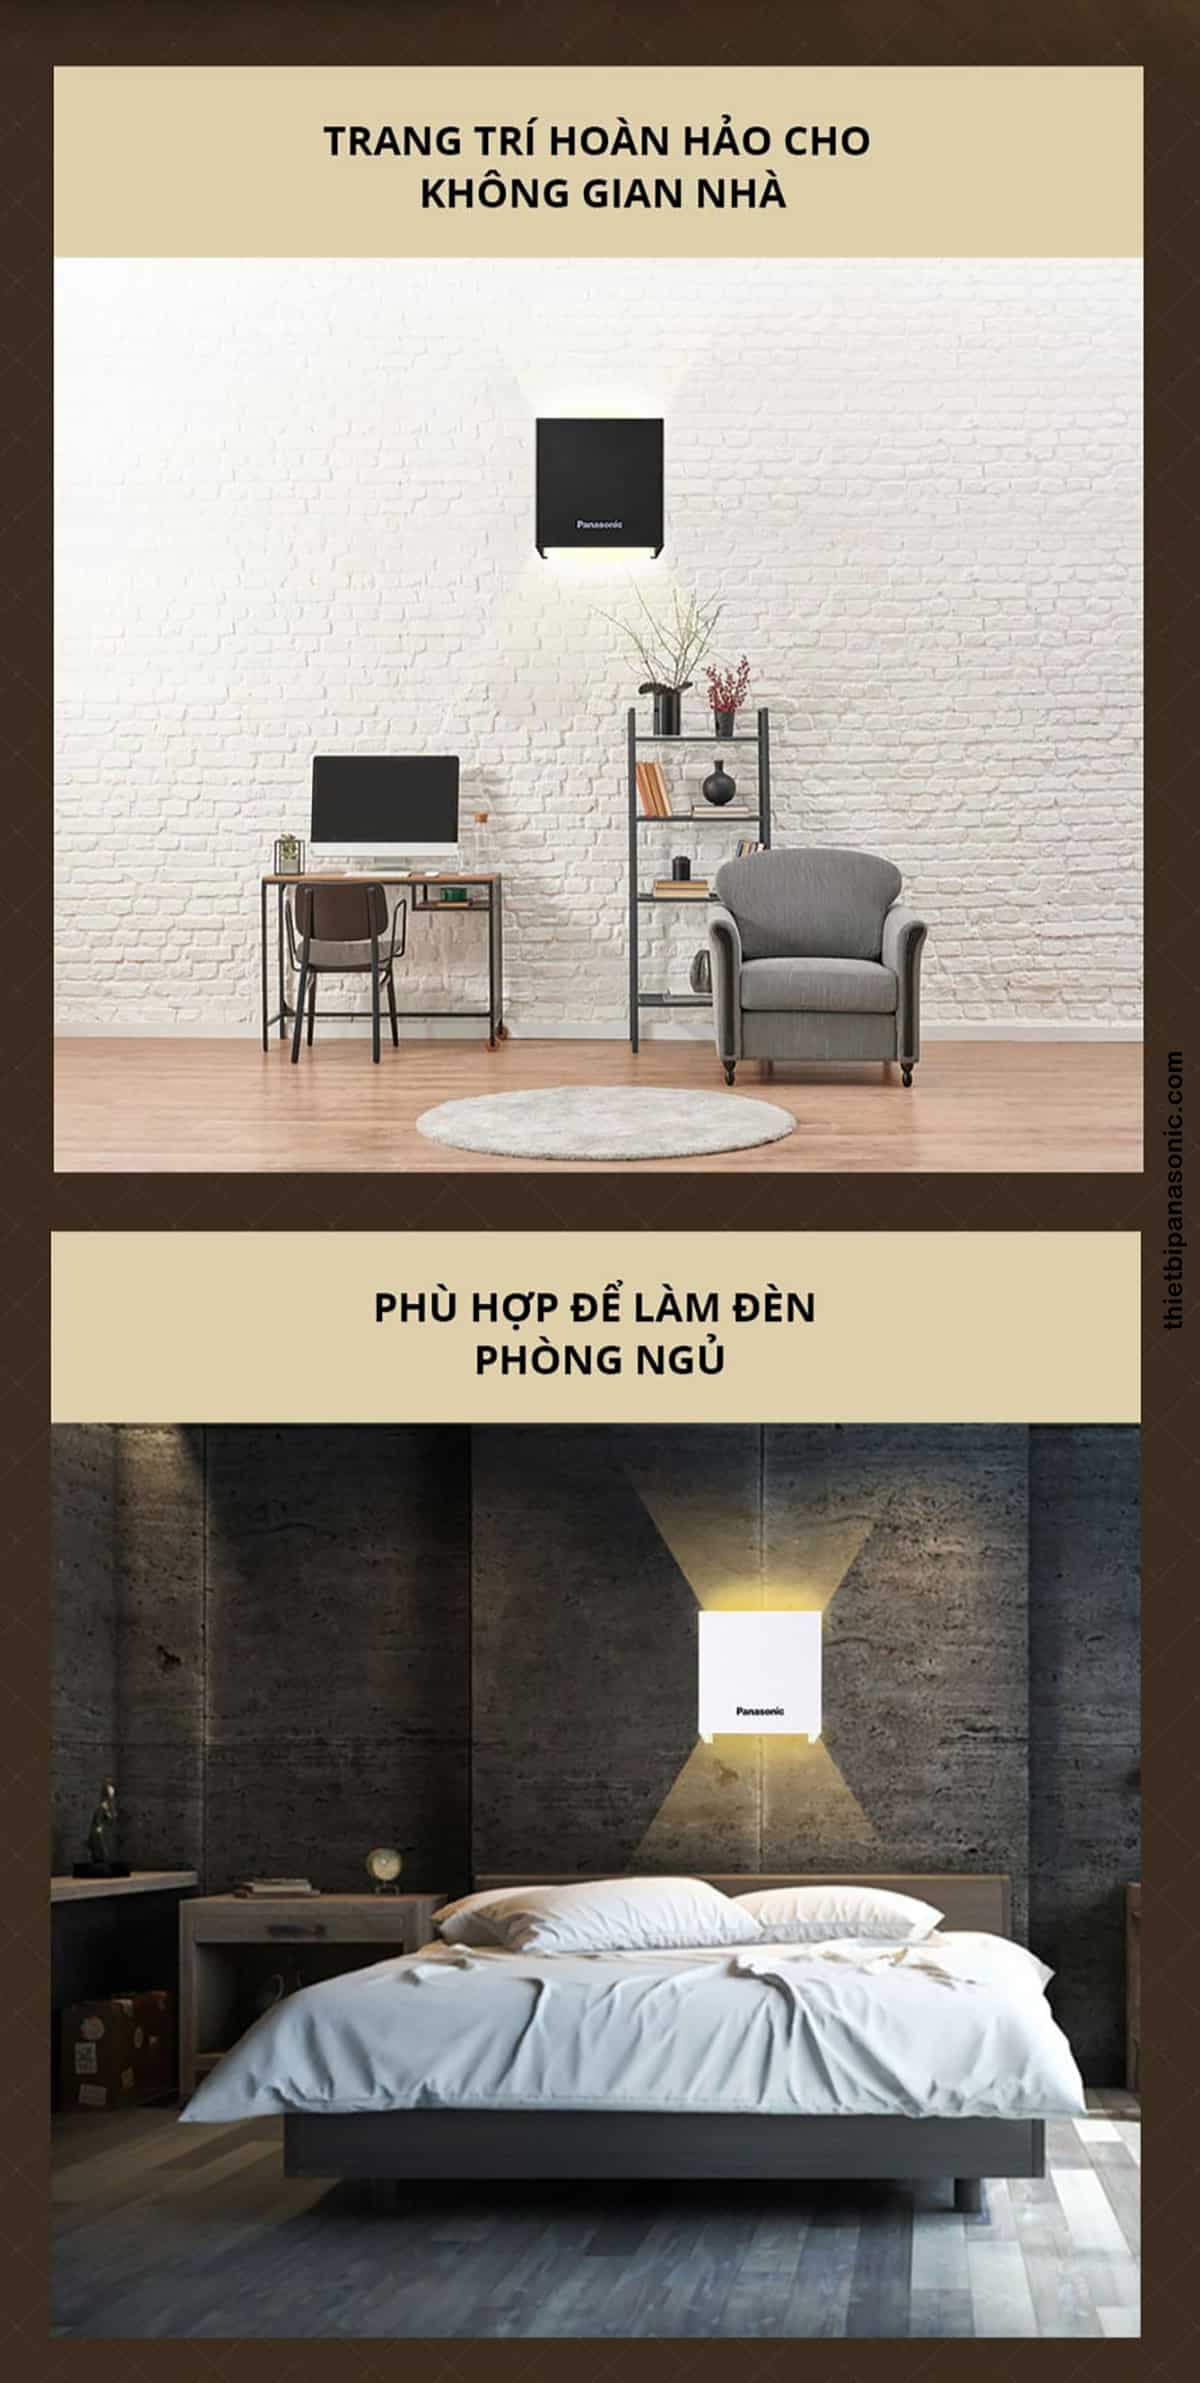 Có thể sử dụng Đèn hắt tường HHBQ1005W88 để trang trí cho không gian nhà hoặc làm đèn ngủ.